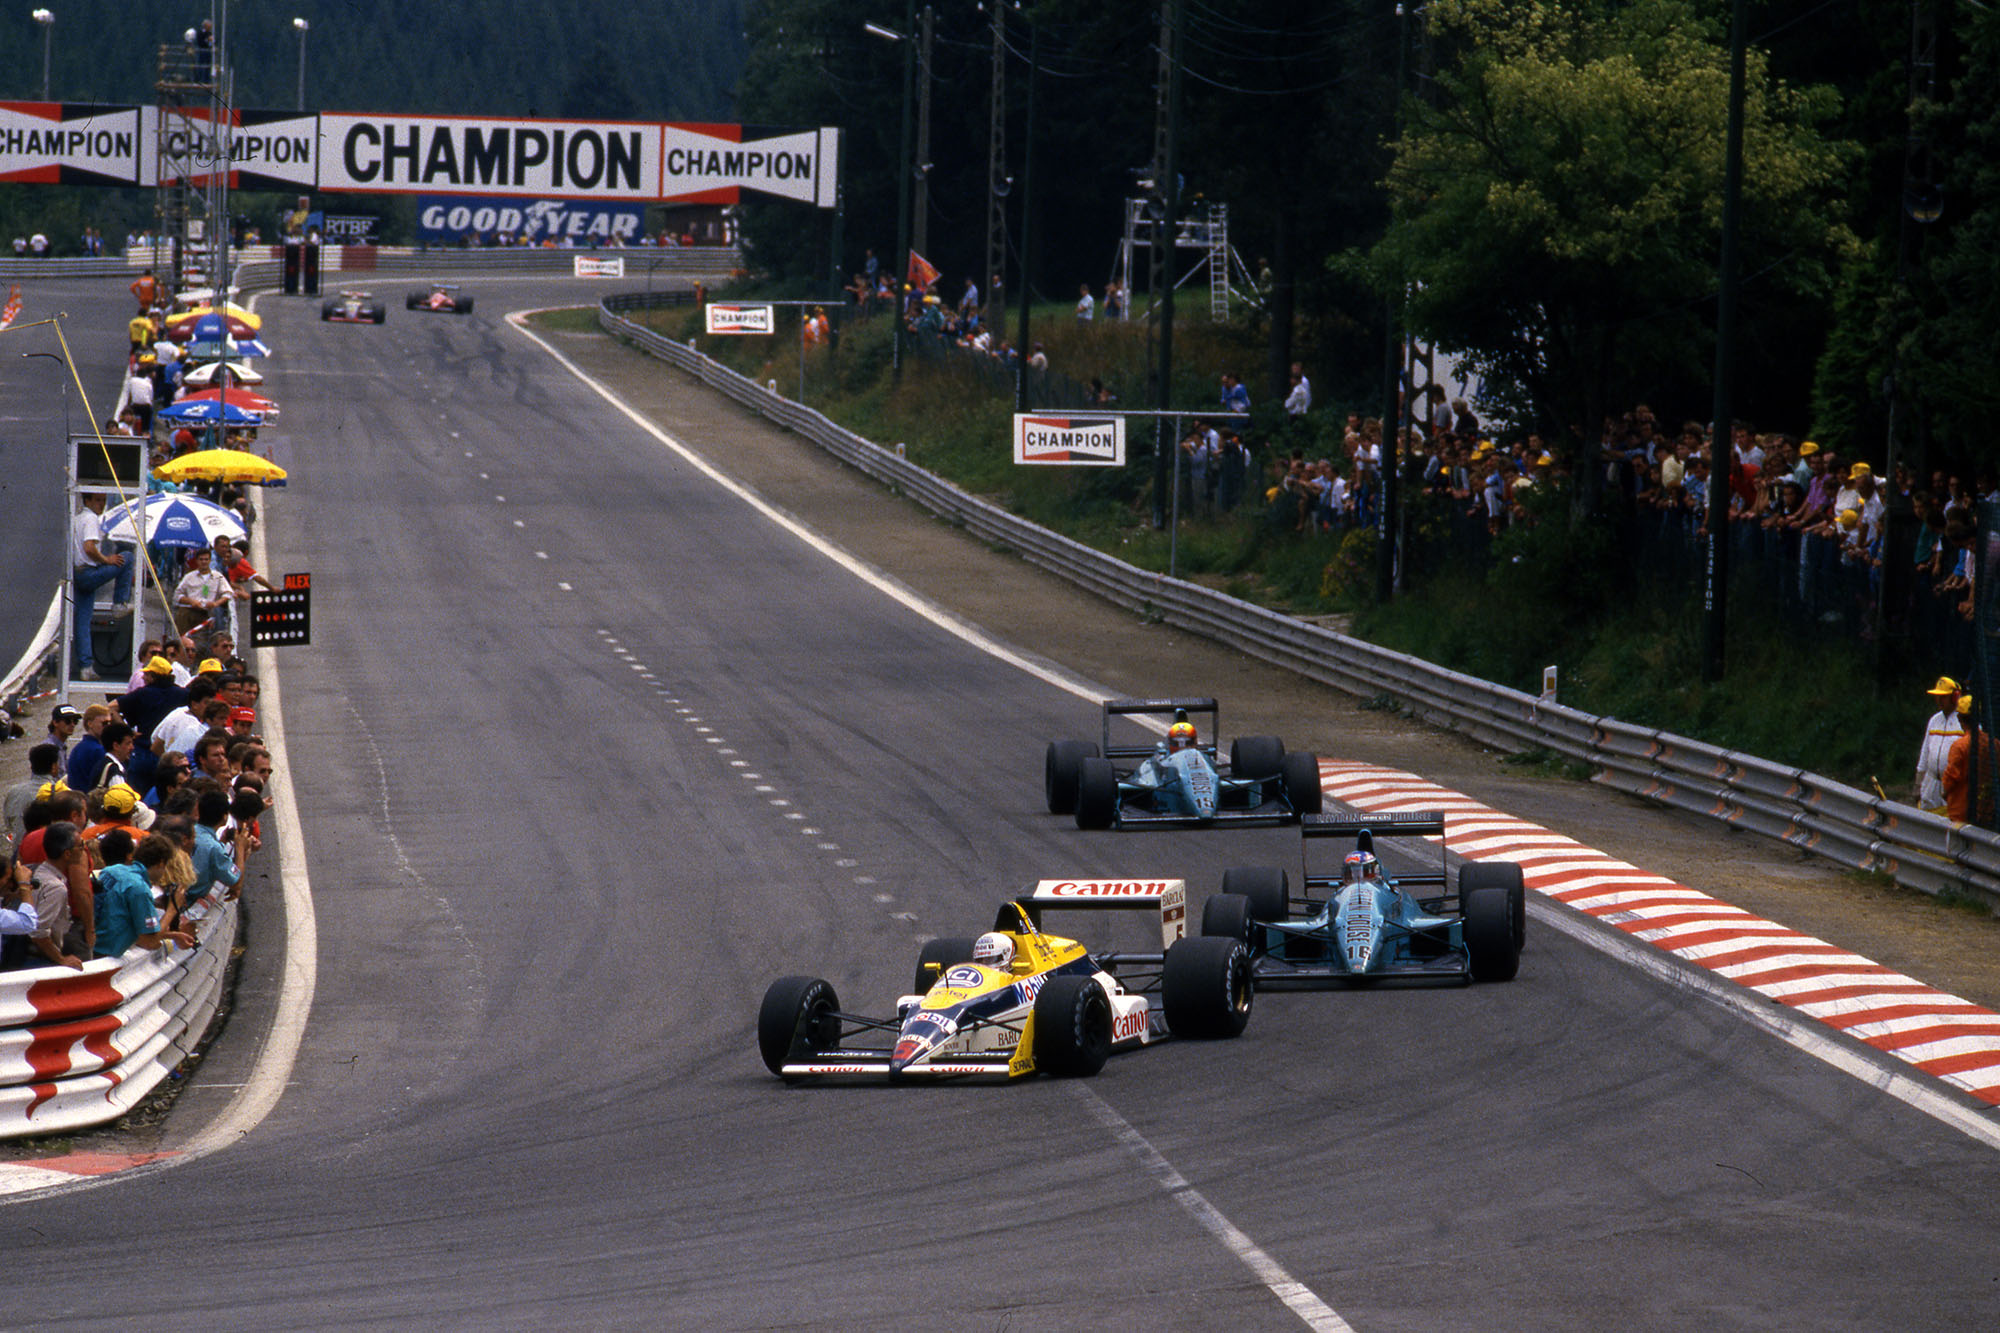 Gran Premi de Bèlgica Spa Francorchamps (bel) 26 28 08 1988